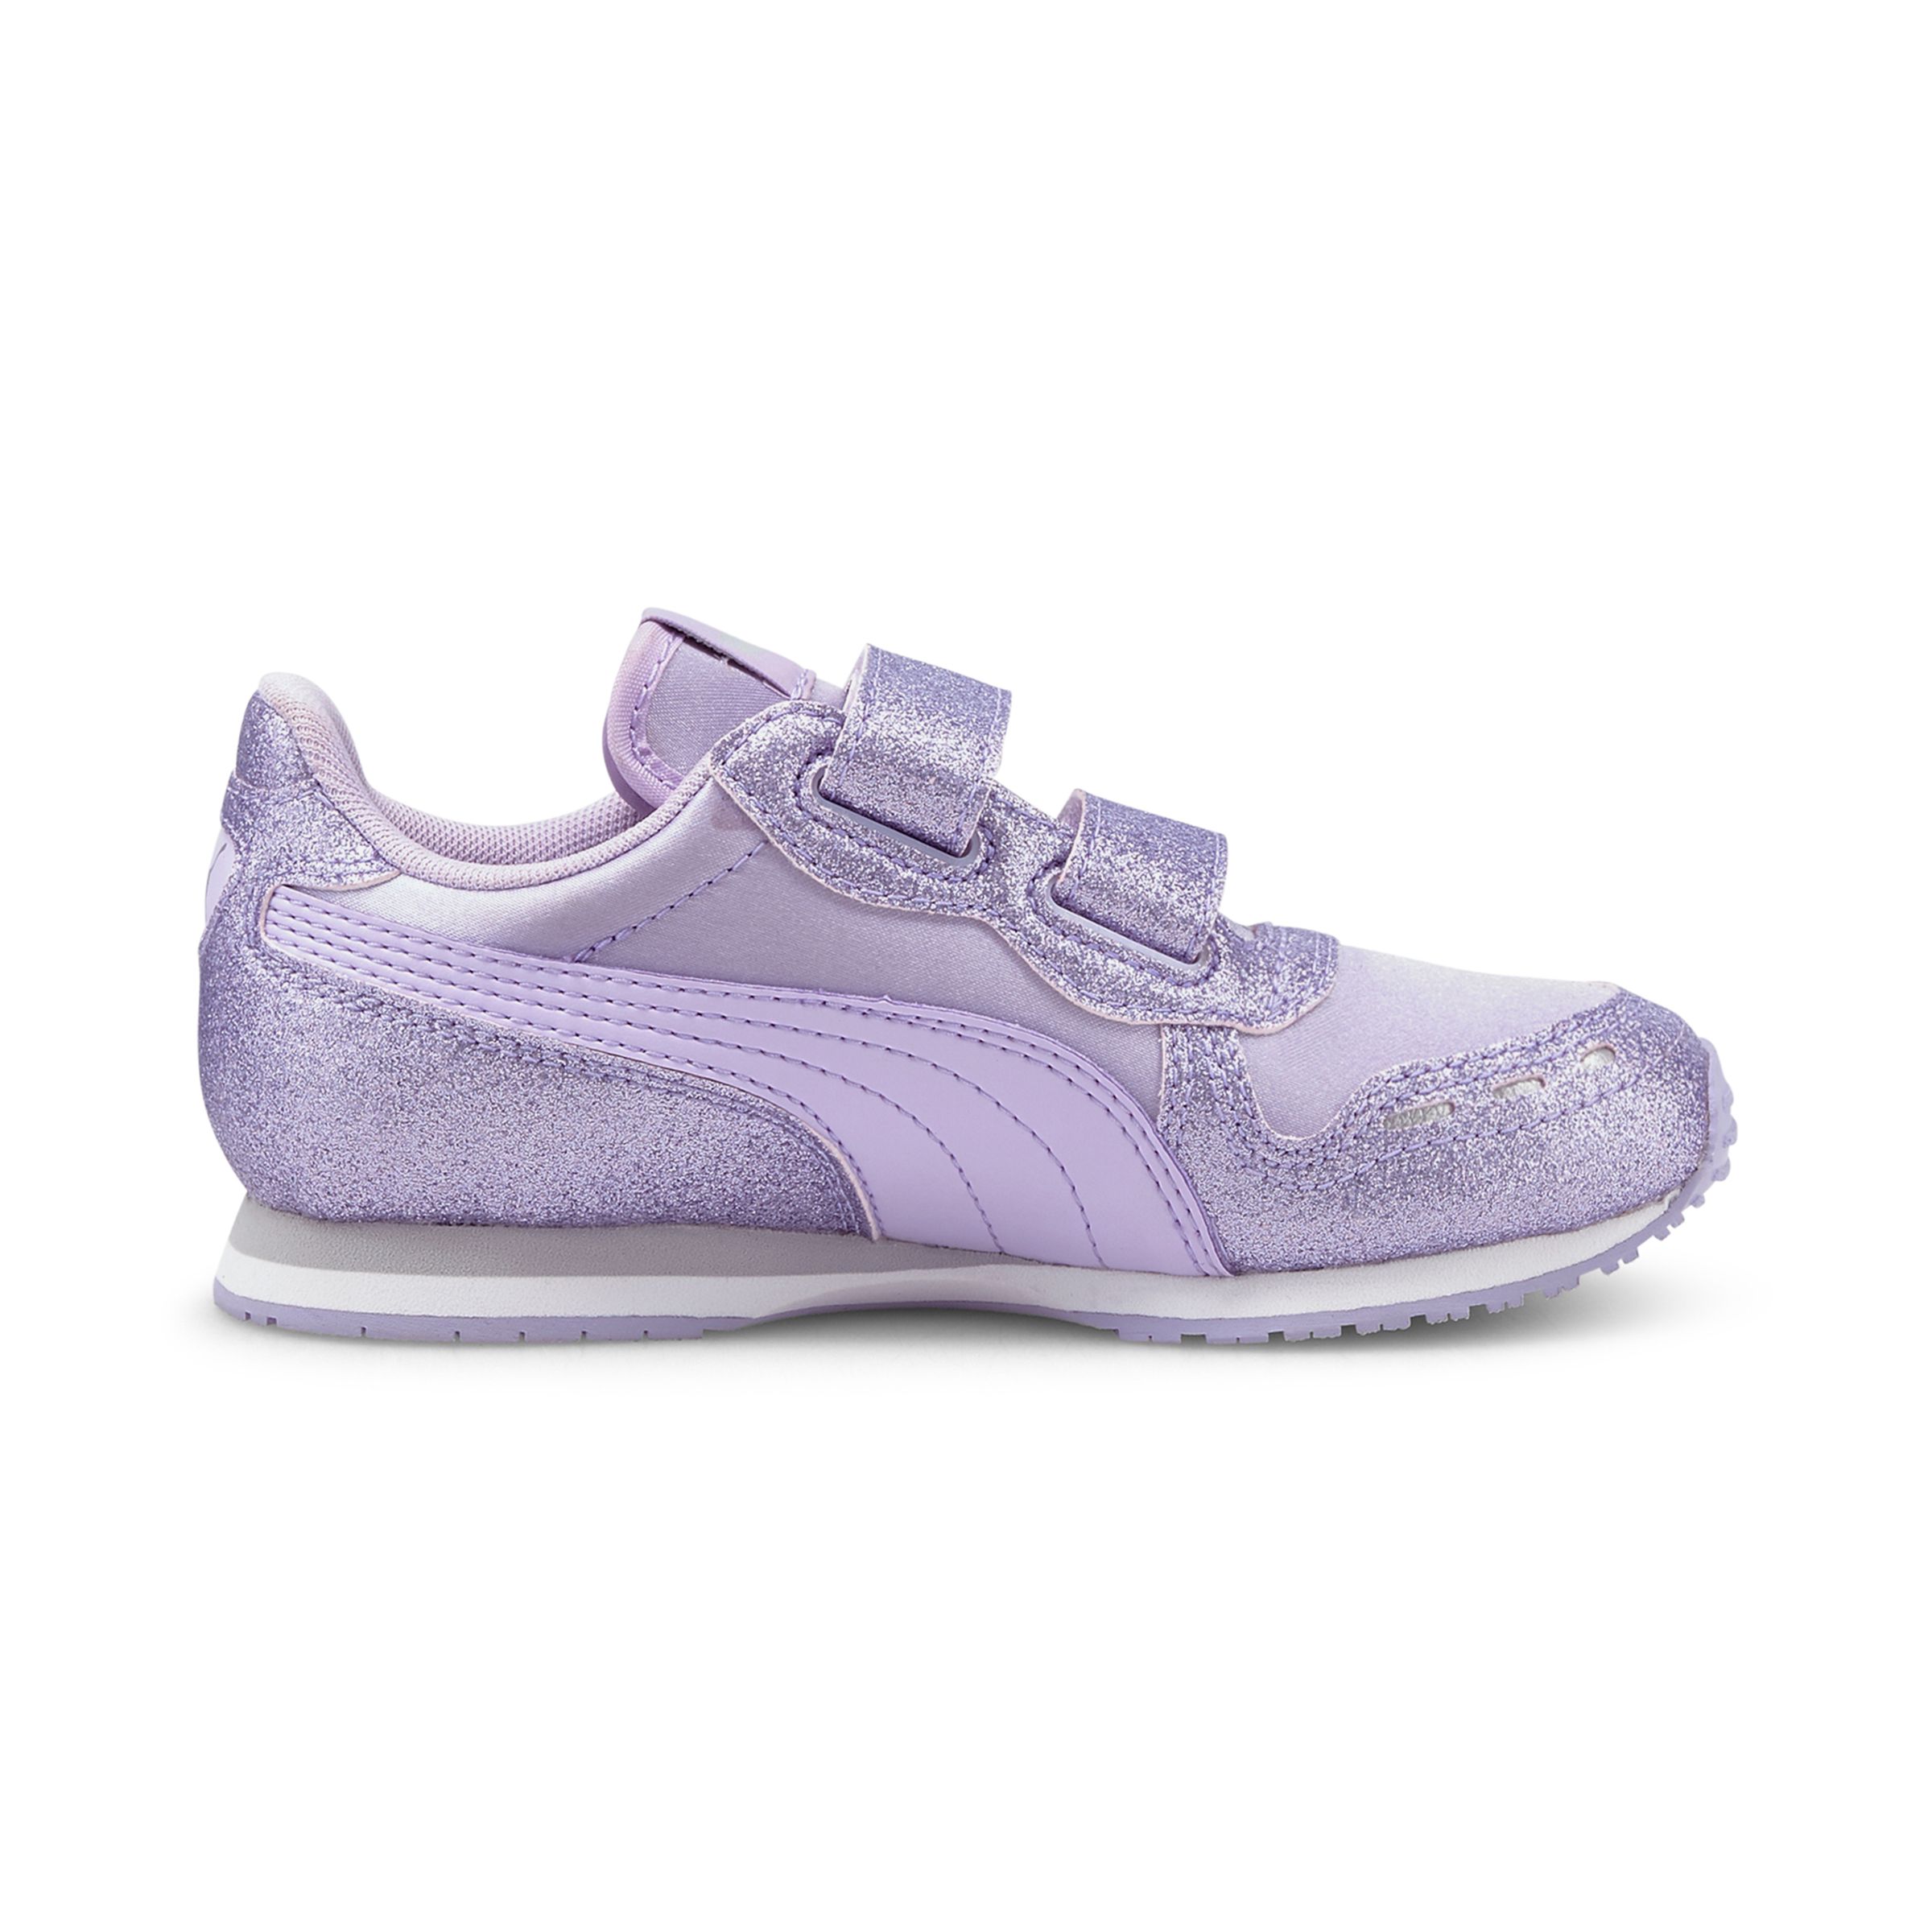 PUMA Kinder Cabana Racer Glitz V PS Sneaker Turnschuhe 370985 Violett